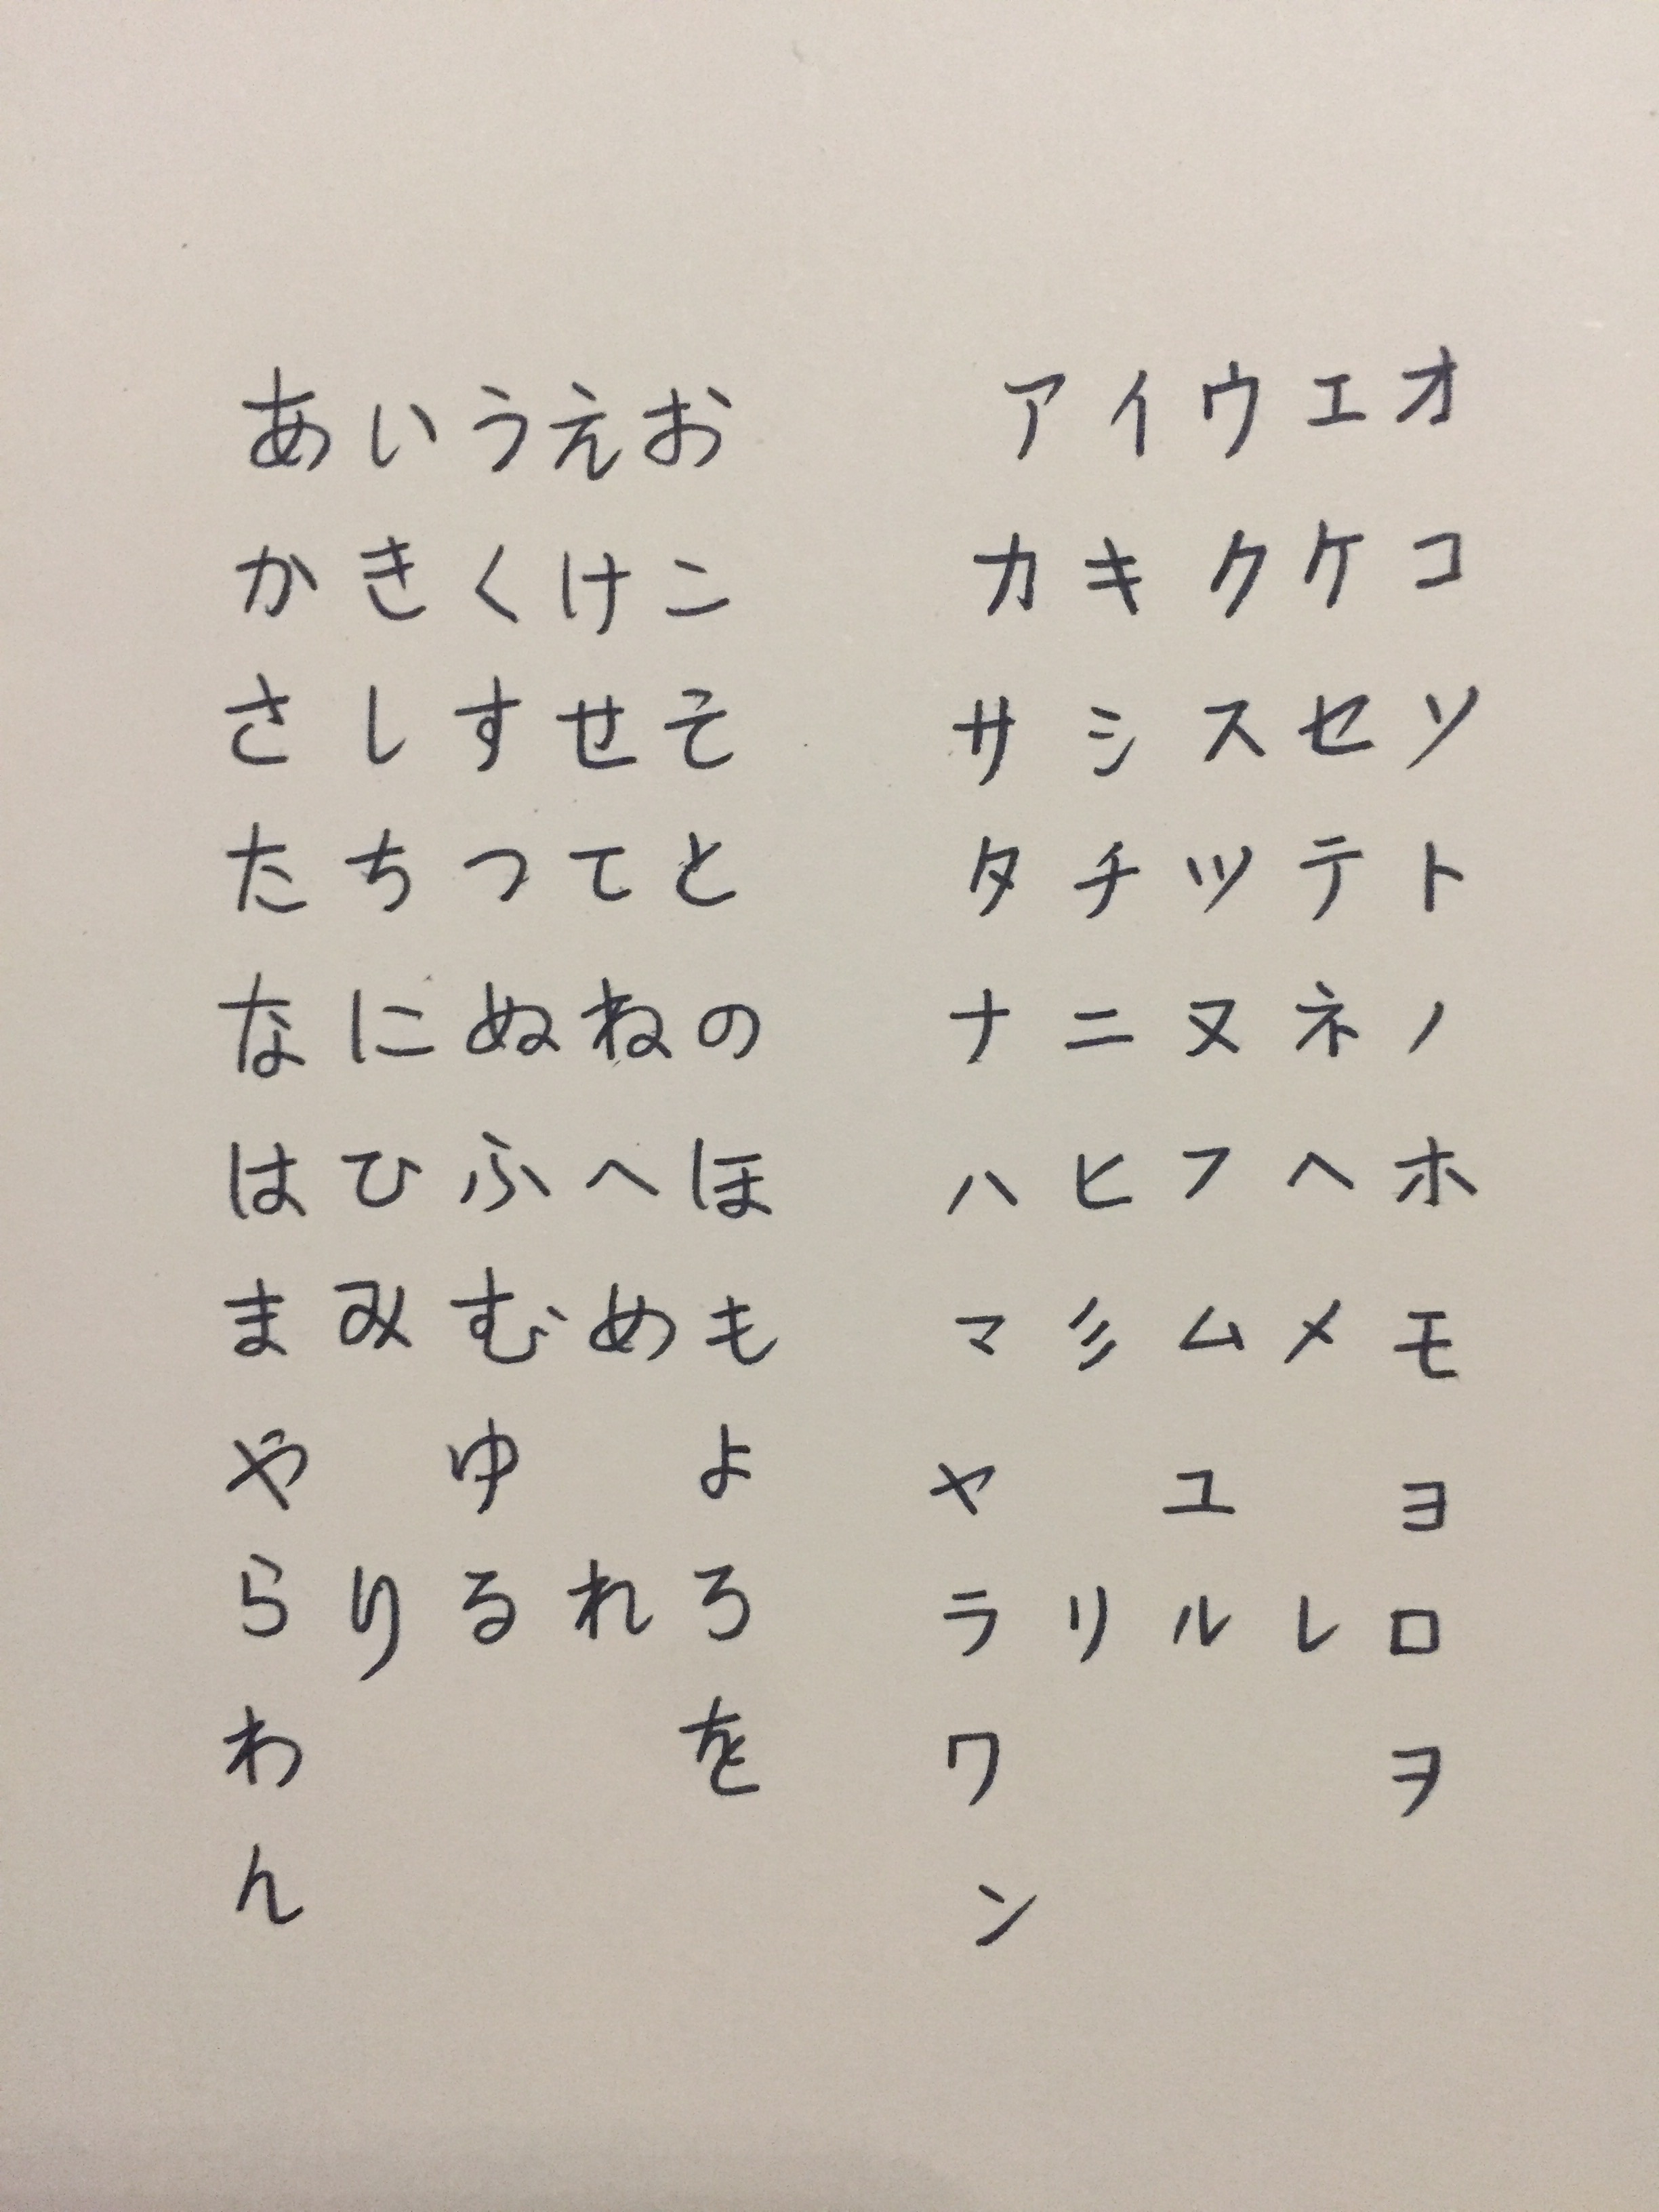 日语浊音手写图片